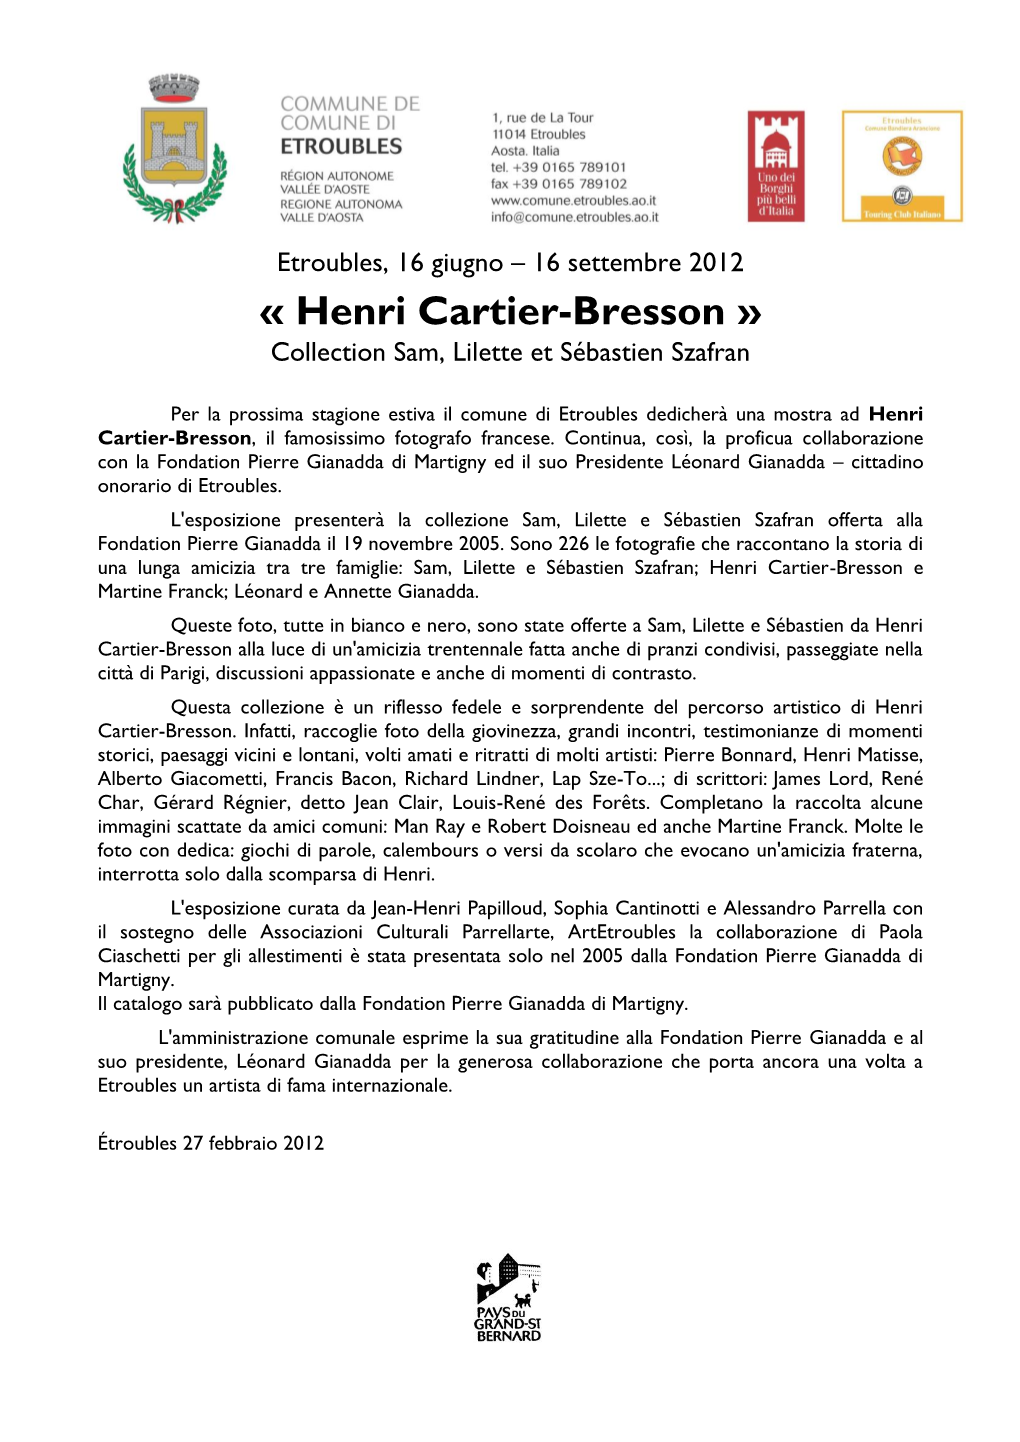 « Henri Cartier-Bresson » Collection Sam, Lilette Et Sébastien Szafran